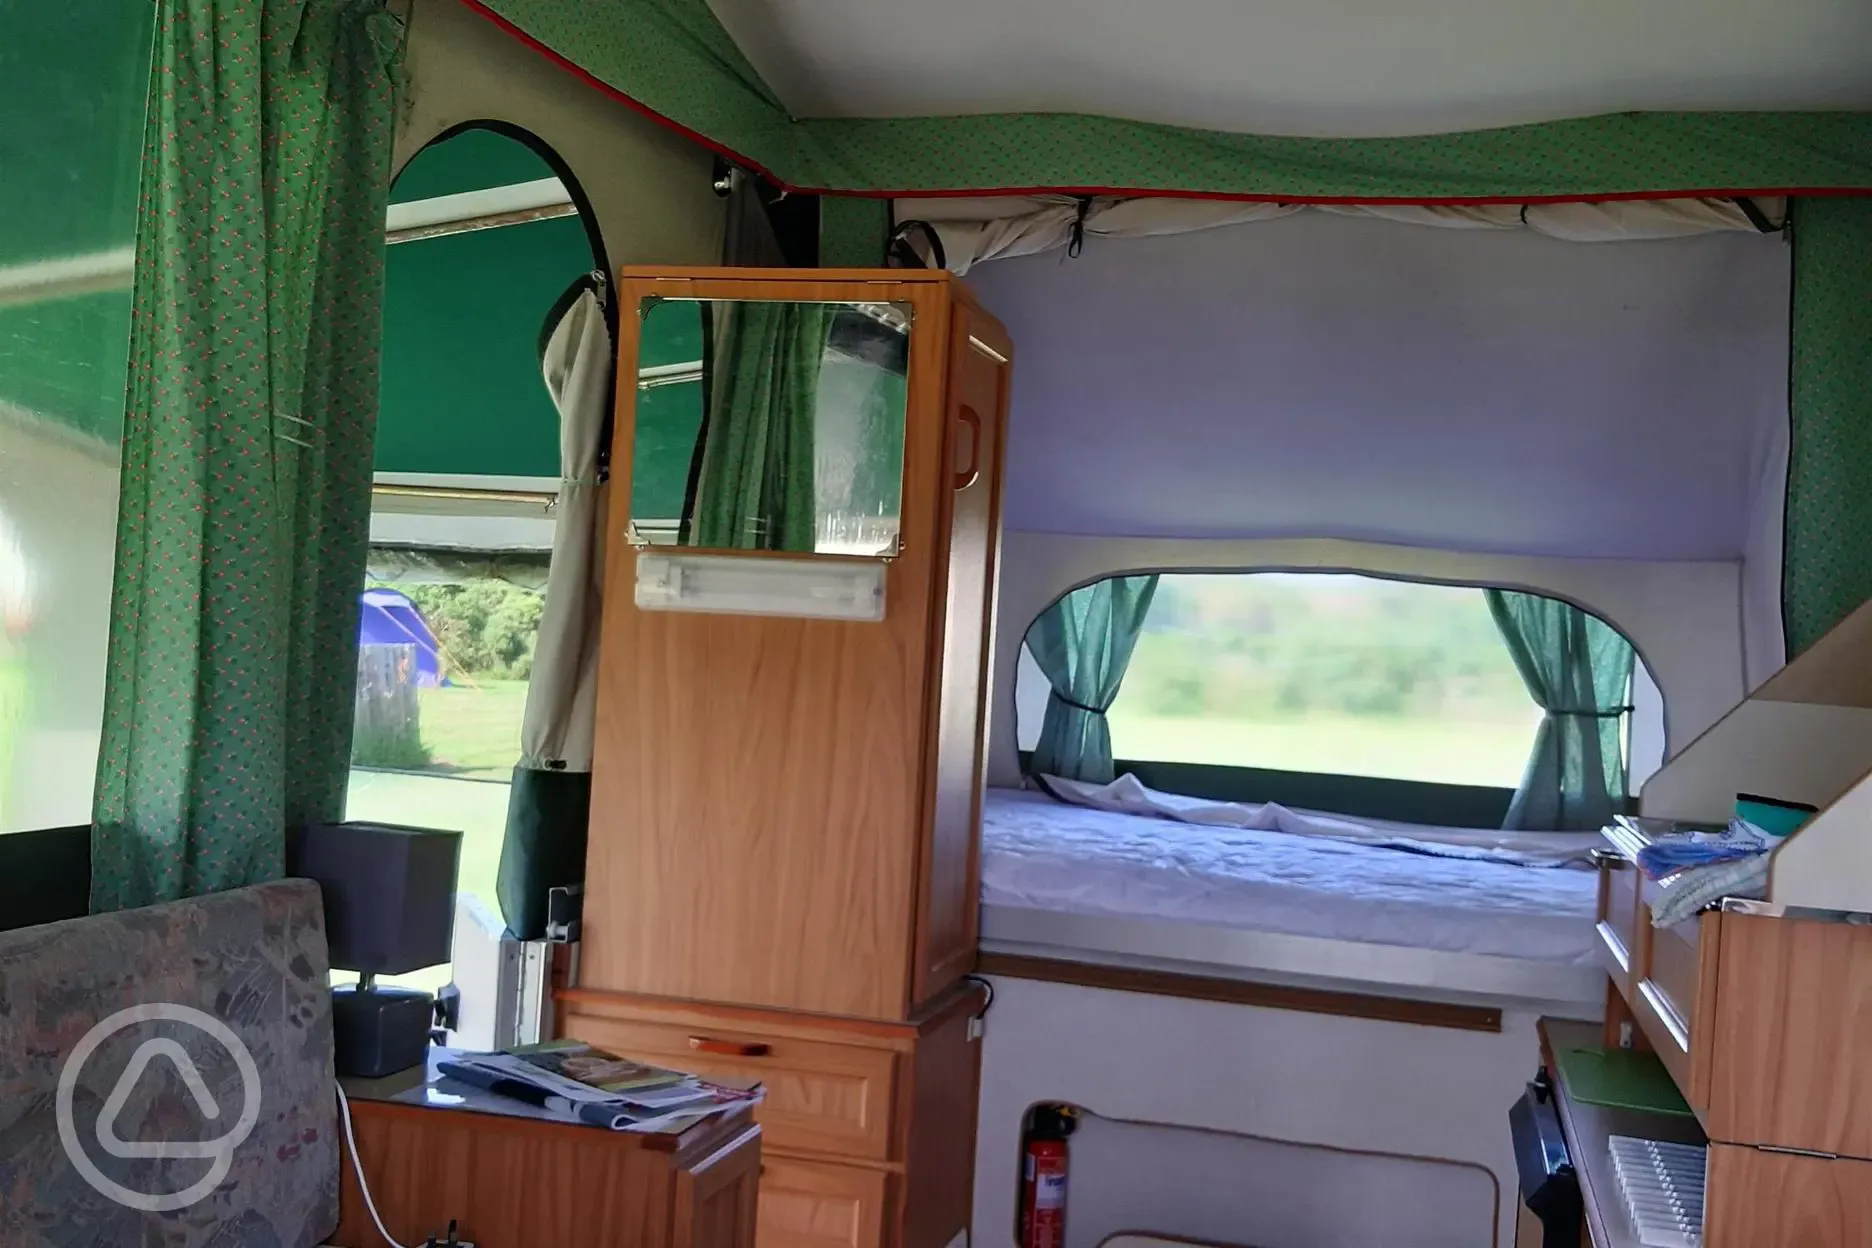 Inside trailer tent